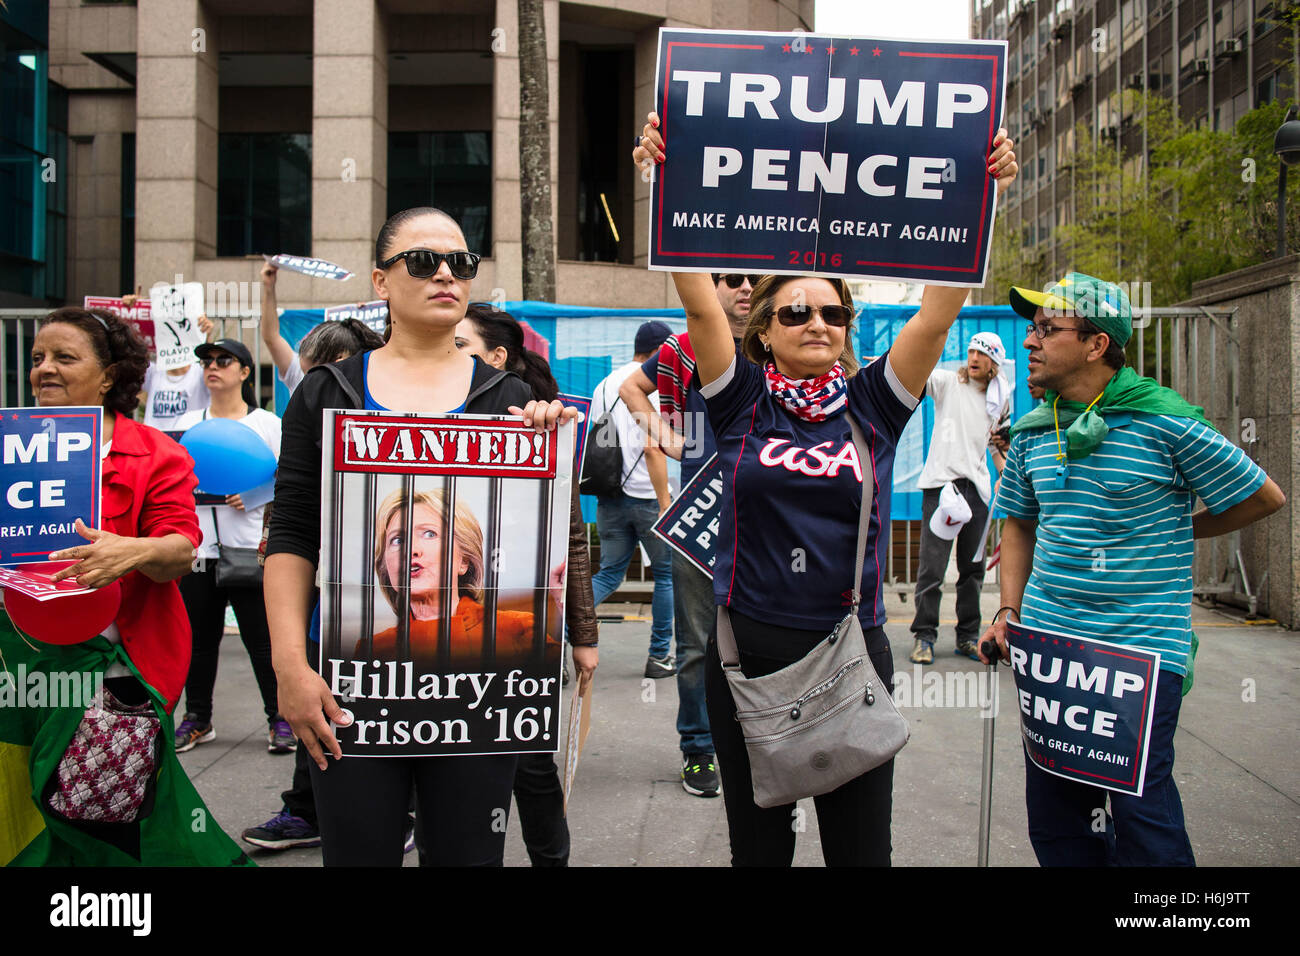 Sao Paulo, Brésil - le 29 octobre 2016, un groupe de partisans de Donald Trump se sont réunis pour un rallye Pro-Trump sur l'Avenue Paulista à Sao Paulo au Brésil. Banque D'Images